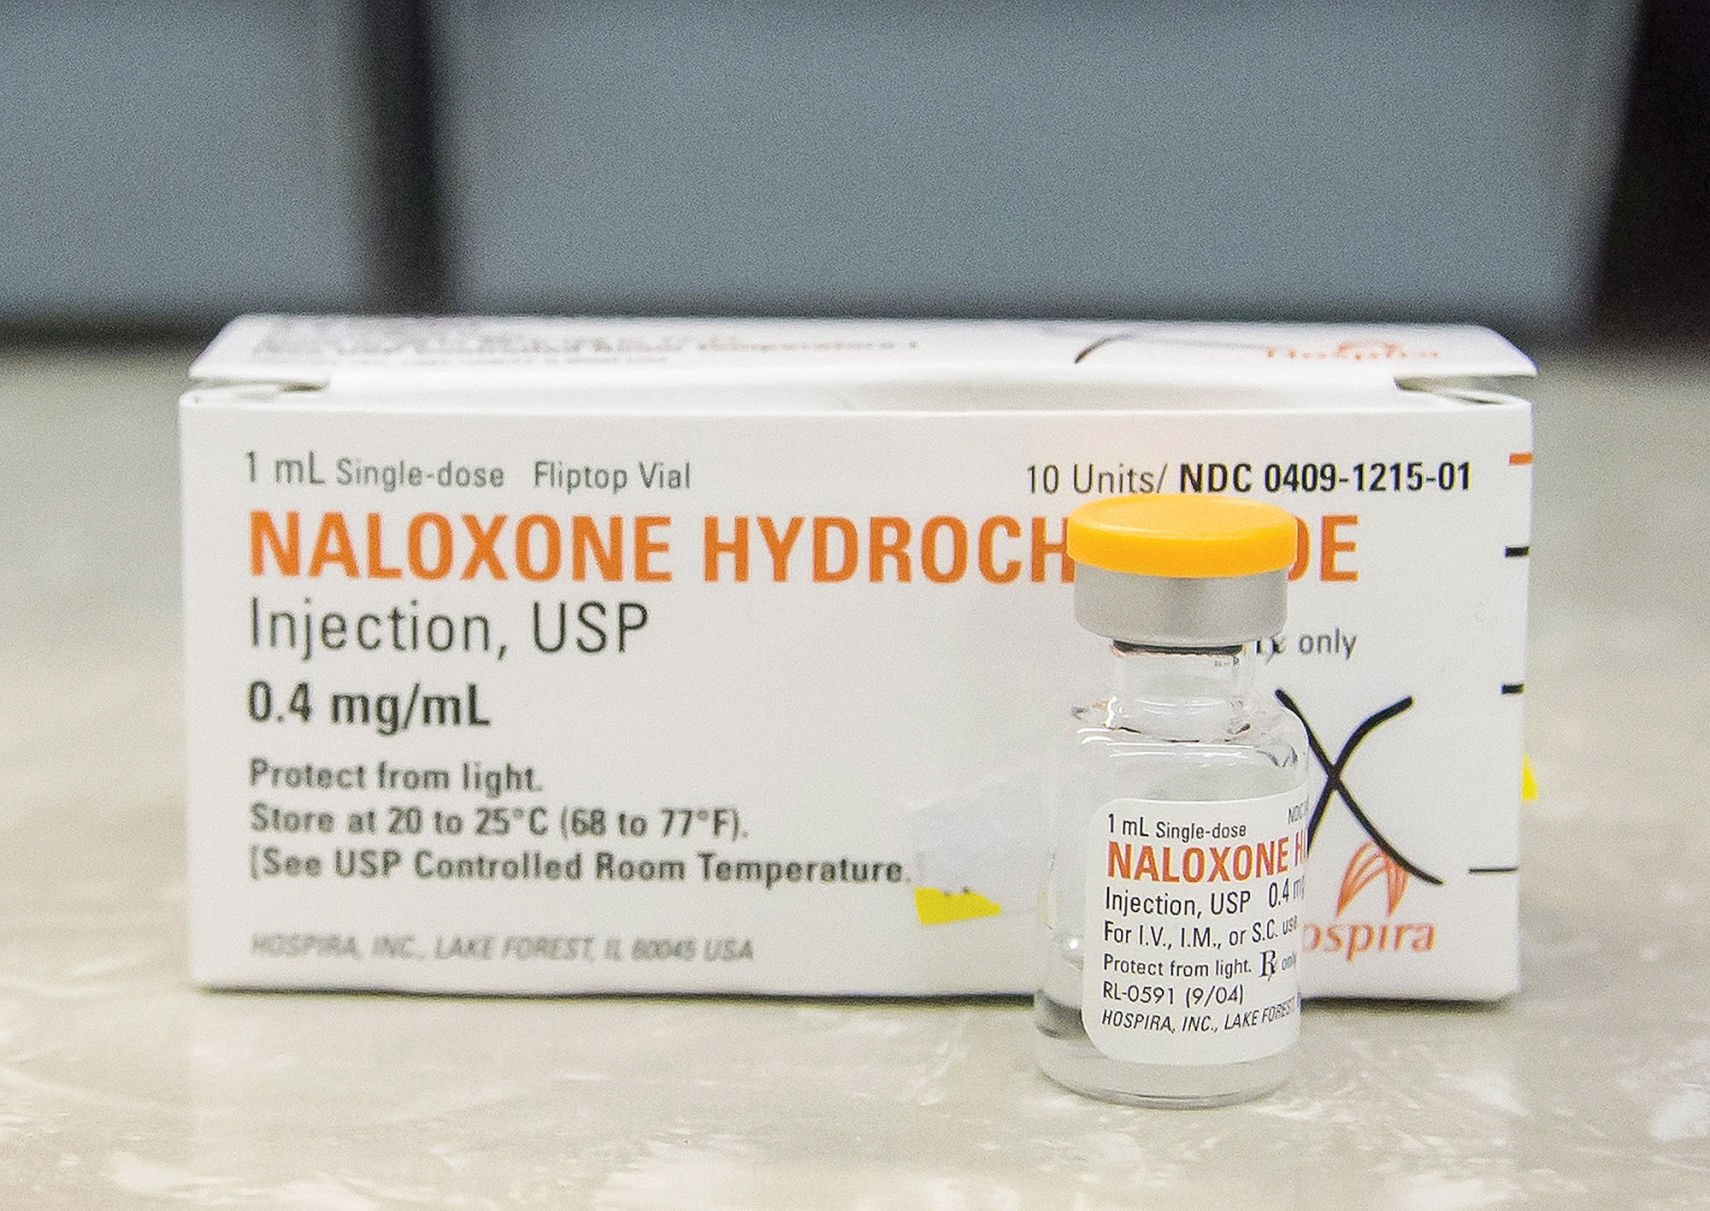 morphine overdose antidote